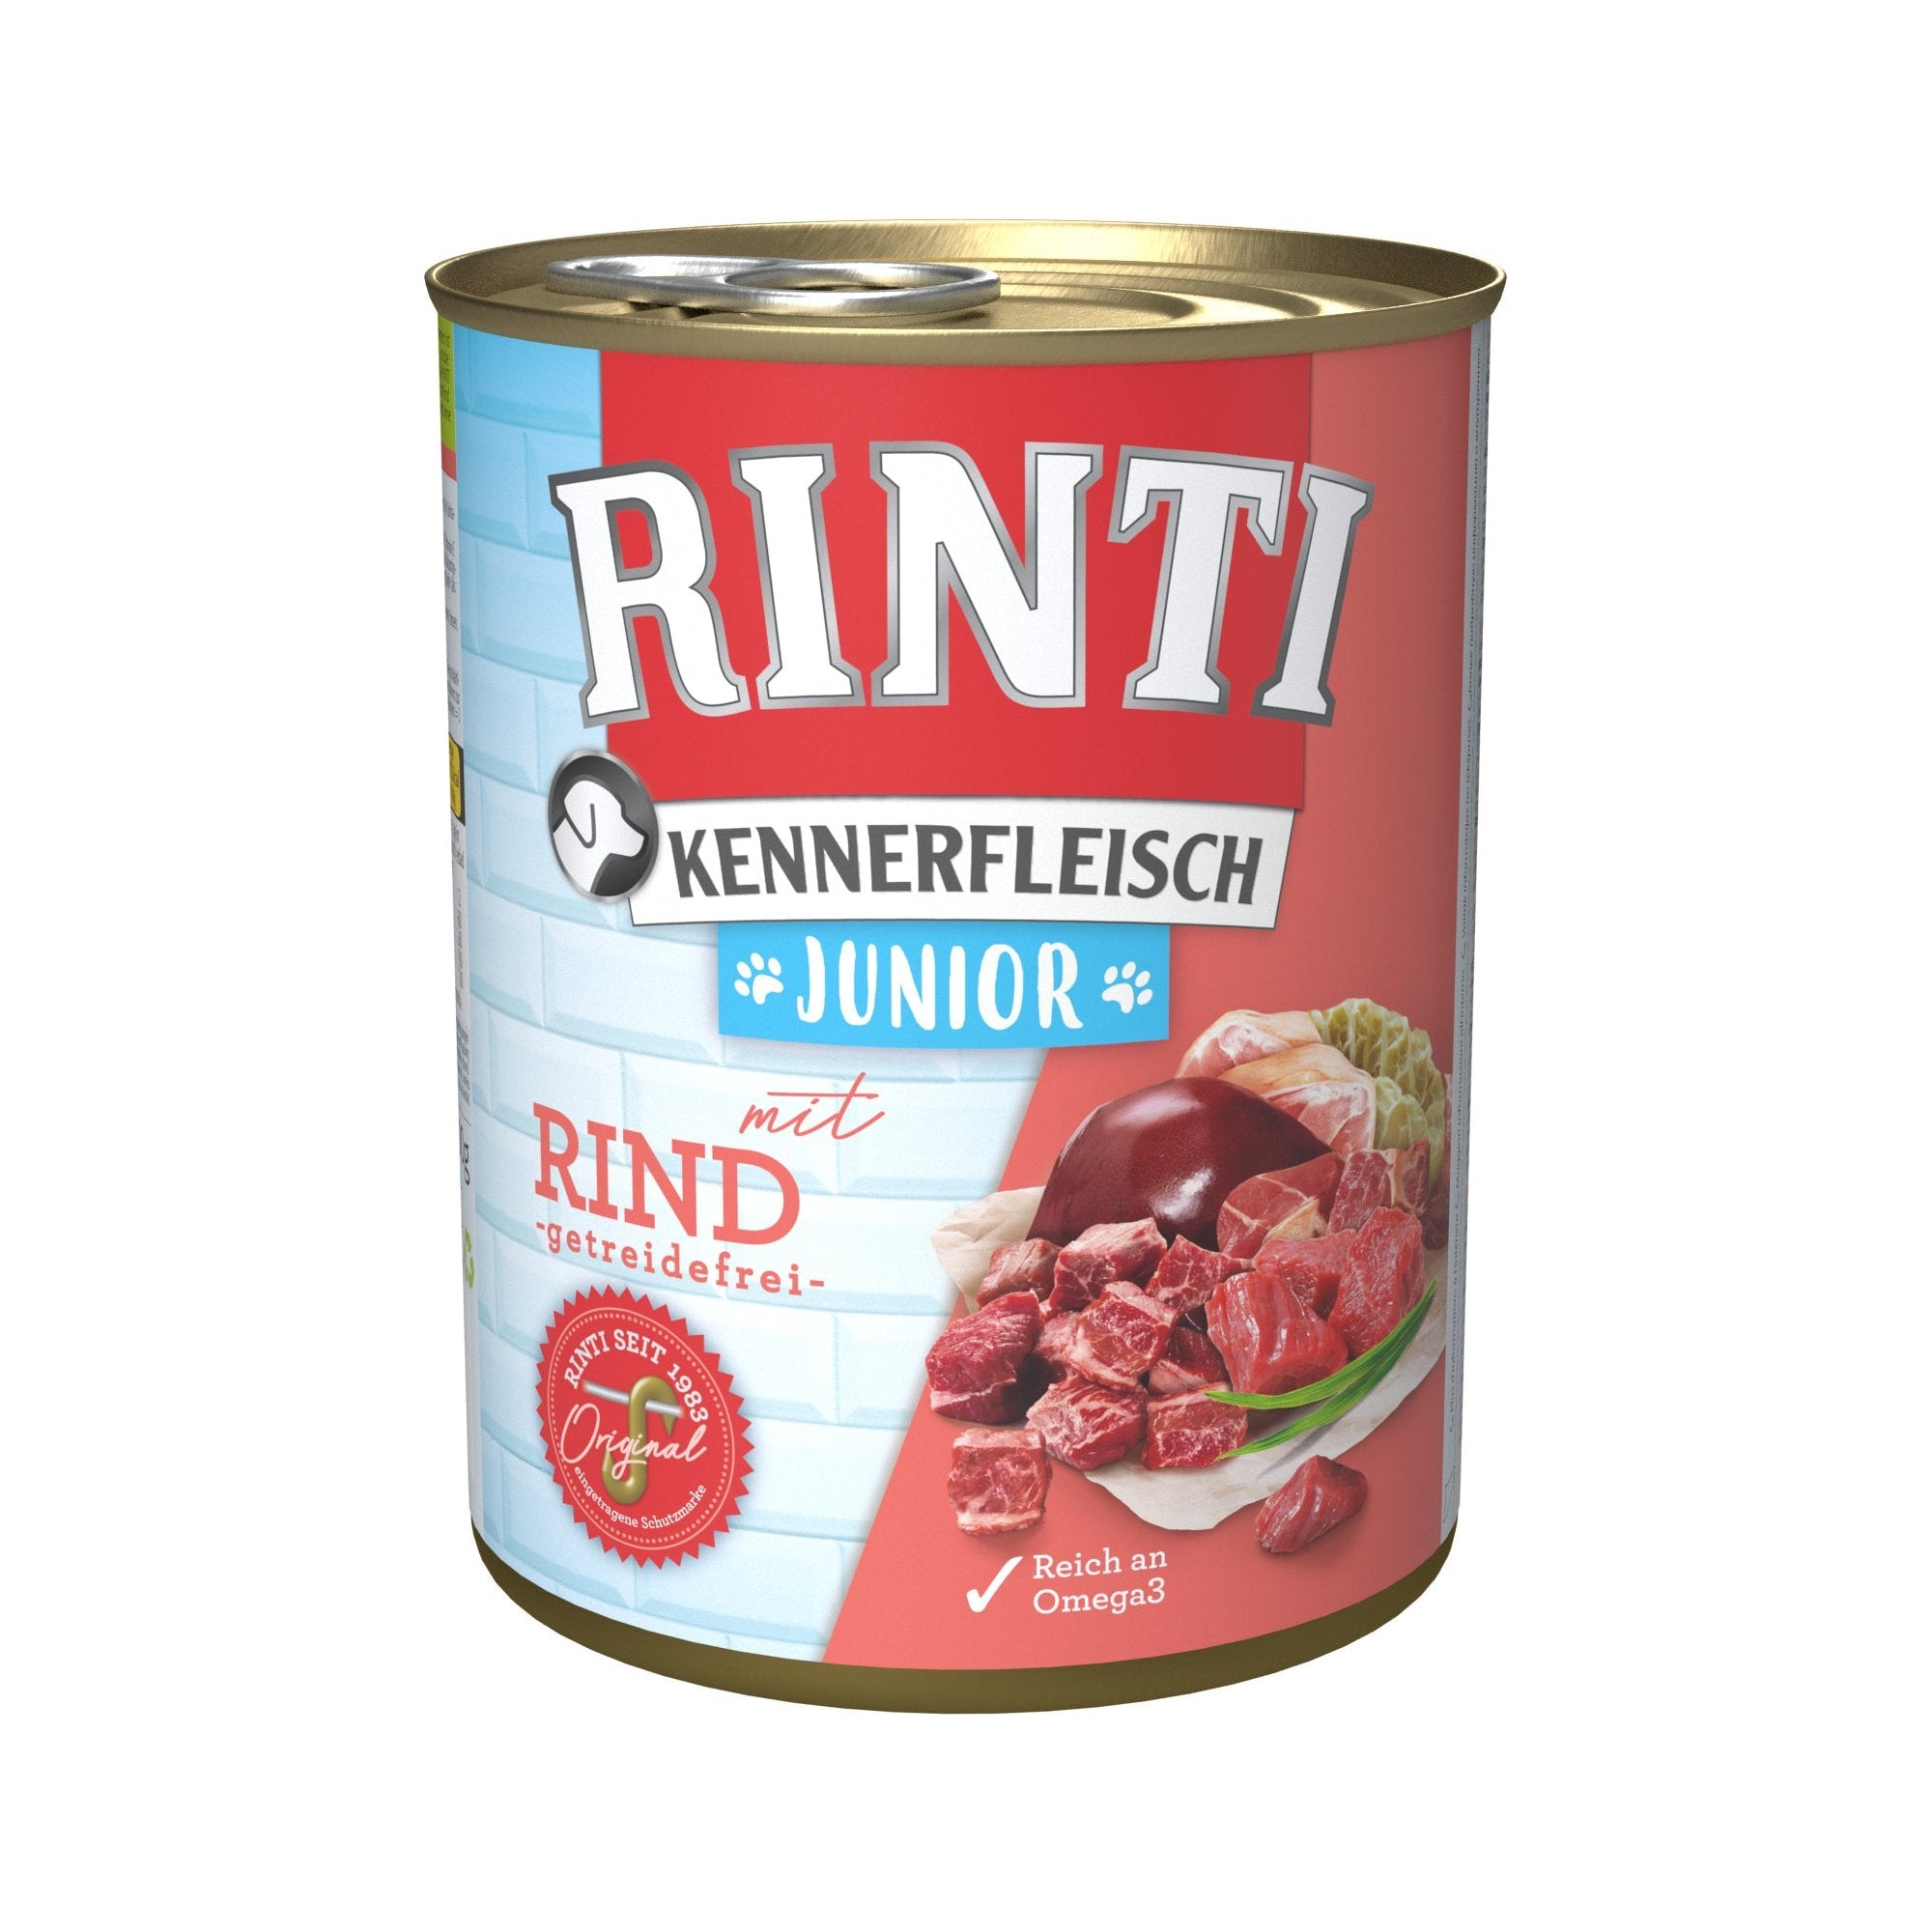 Rinti Kennerfleisch Junior Rind - zoo.de